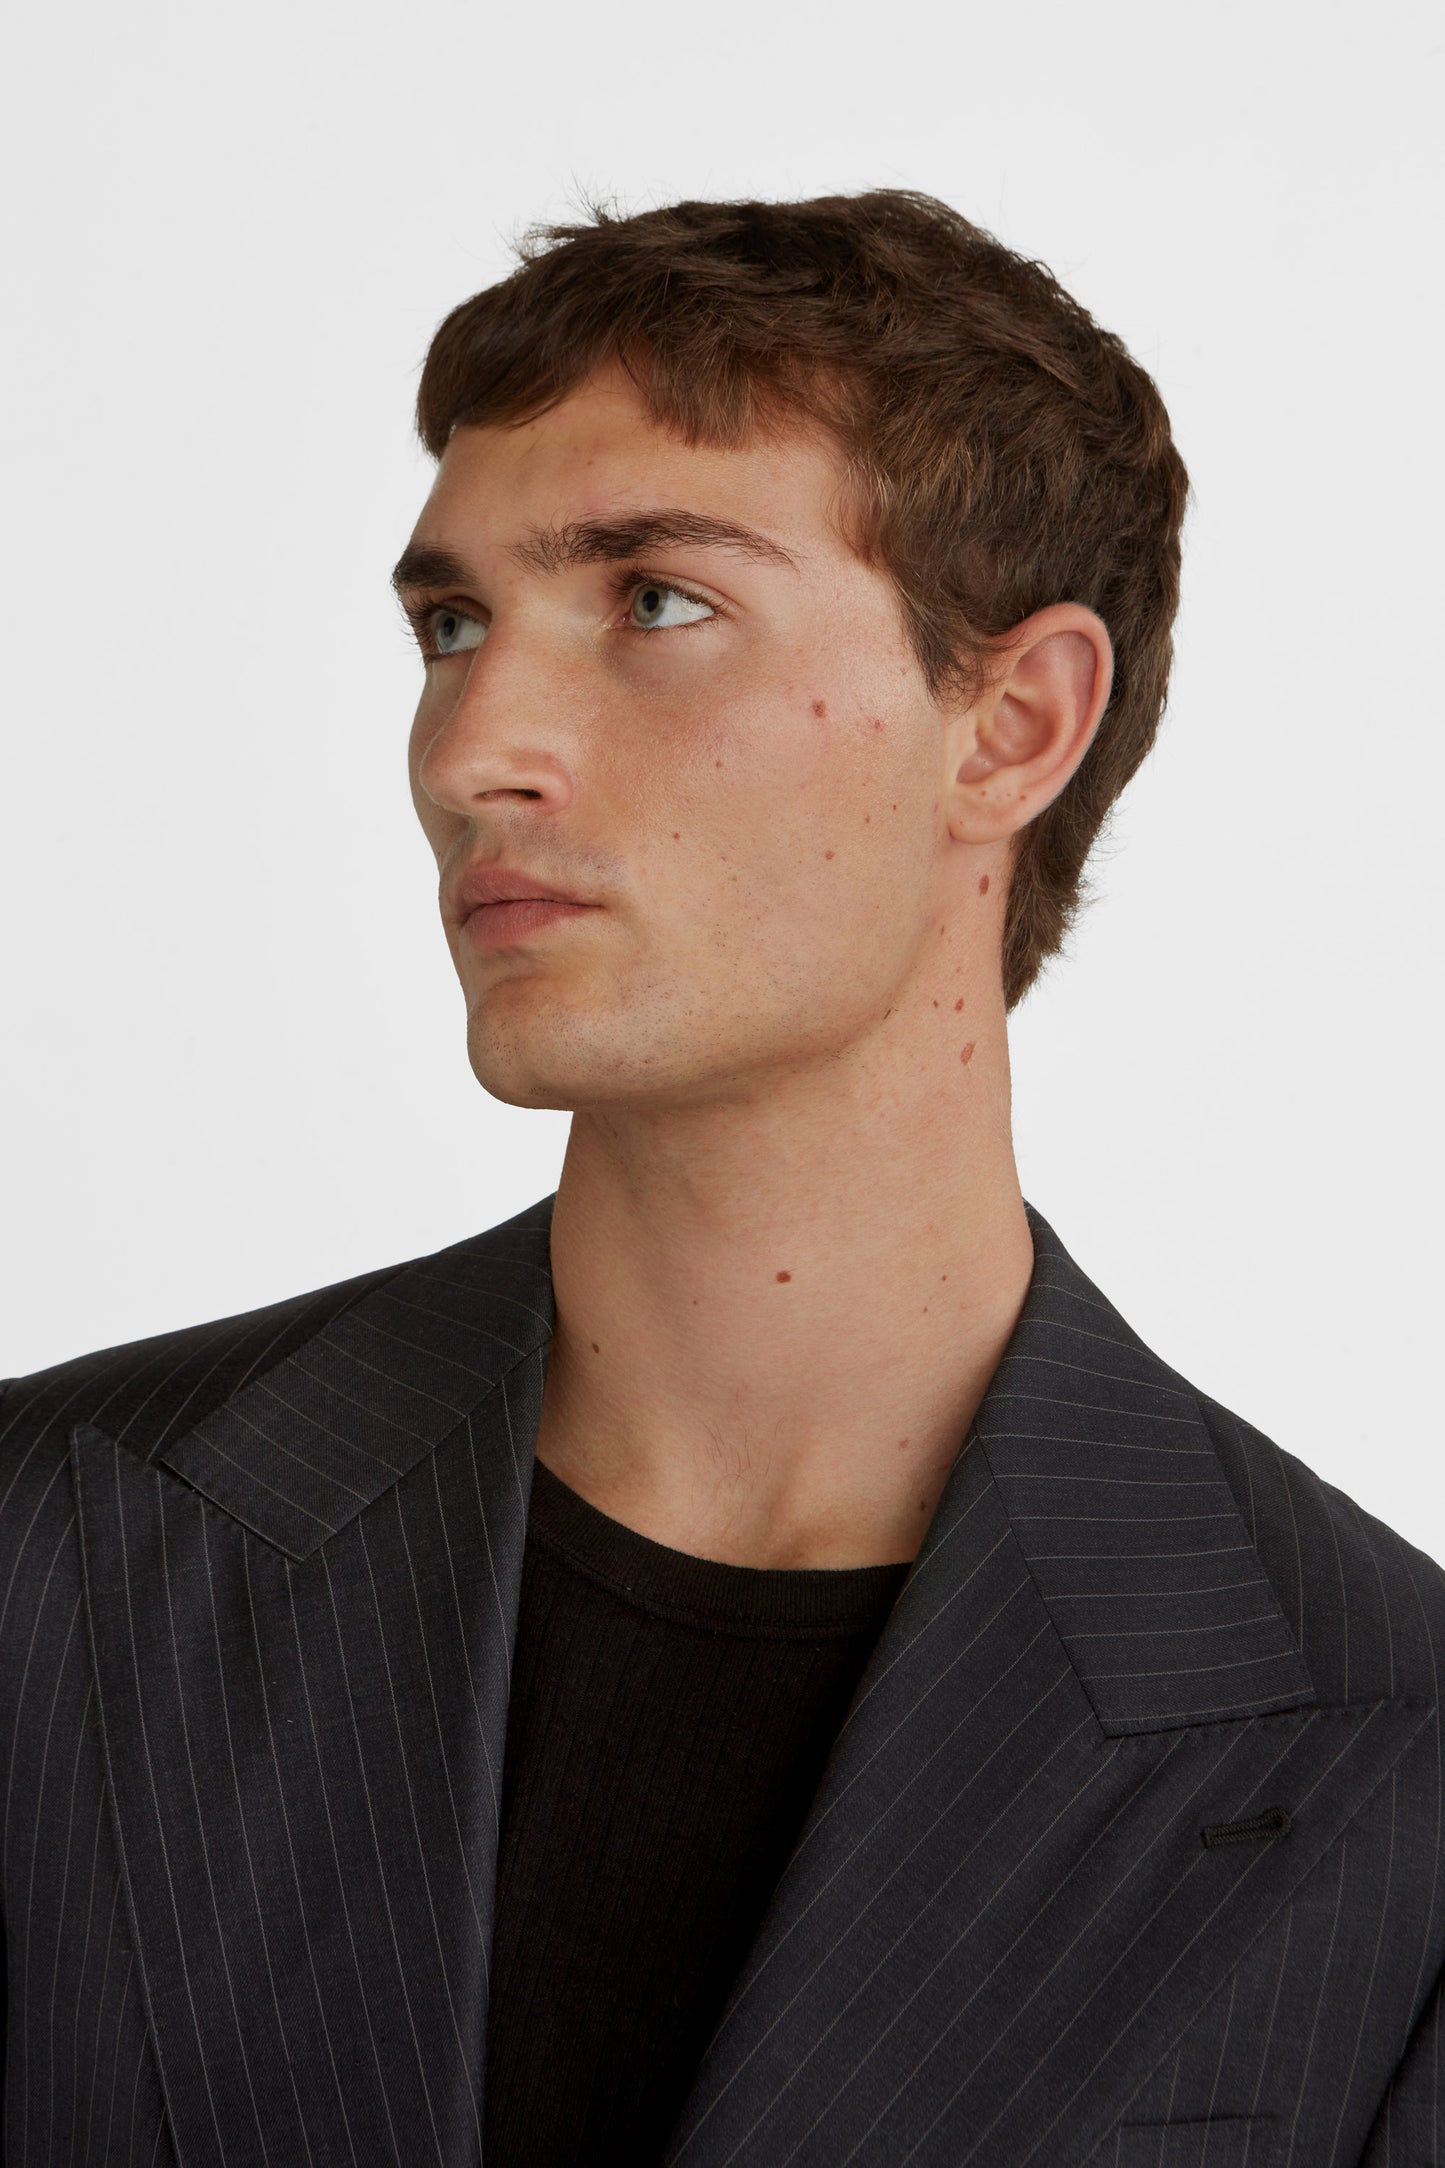 Dark grey prinstriped suit super 130 wool